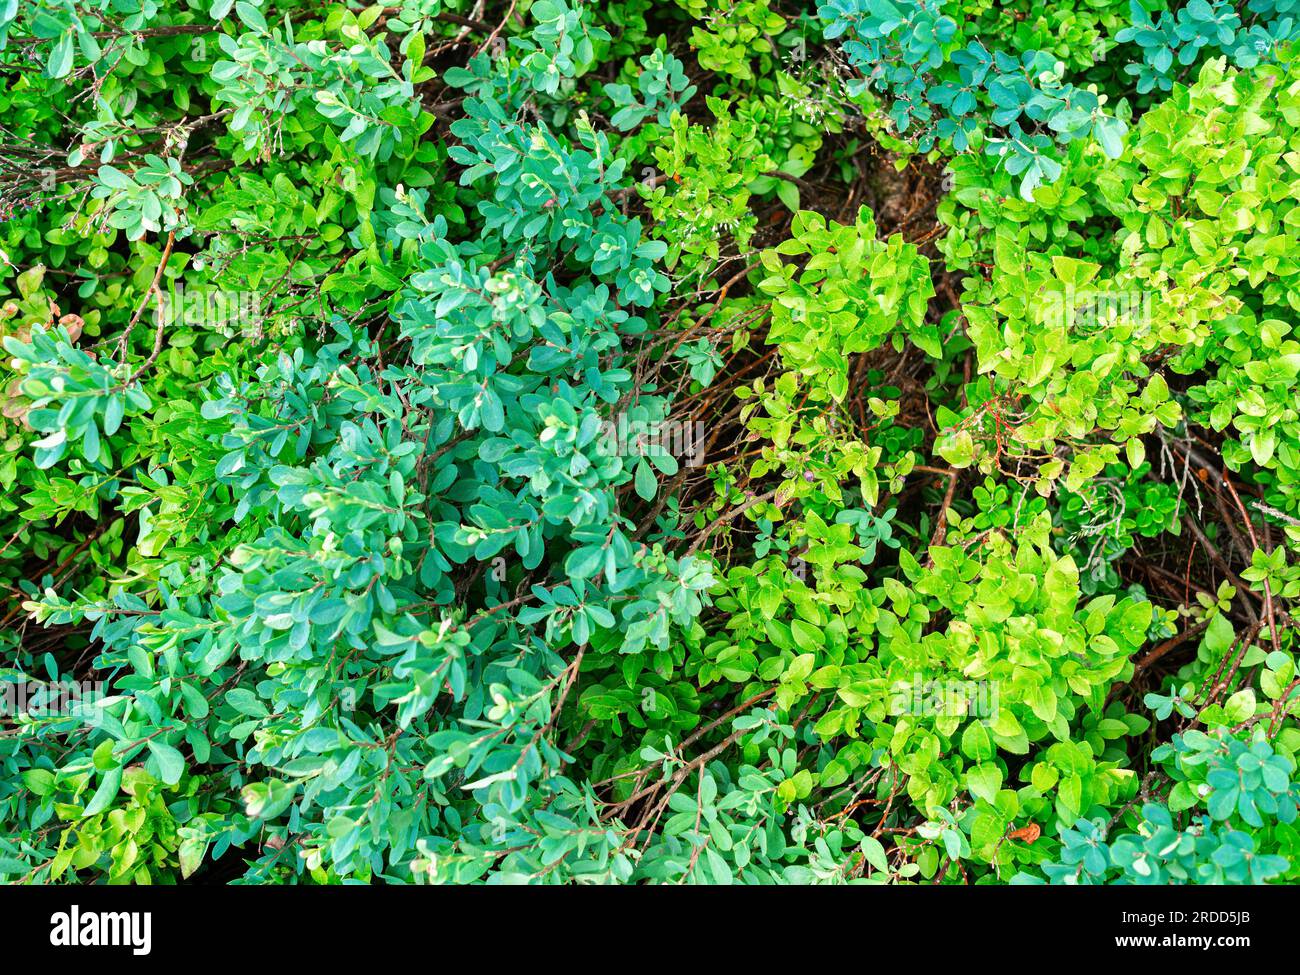 Natürliche Vegetation im Hintergrund - eine Kombination aus zwei Grüntönen Stockfoto